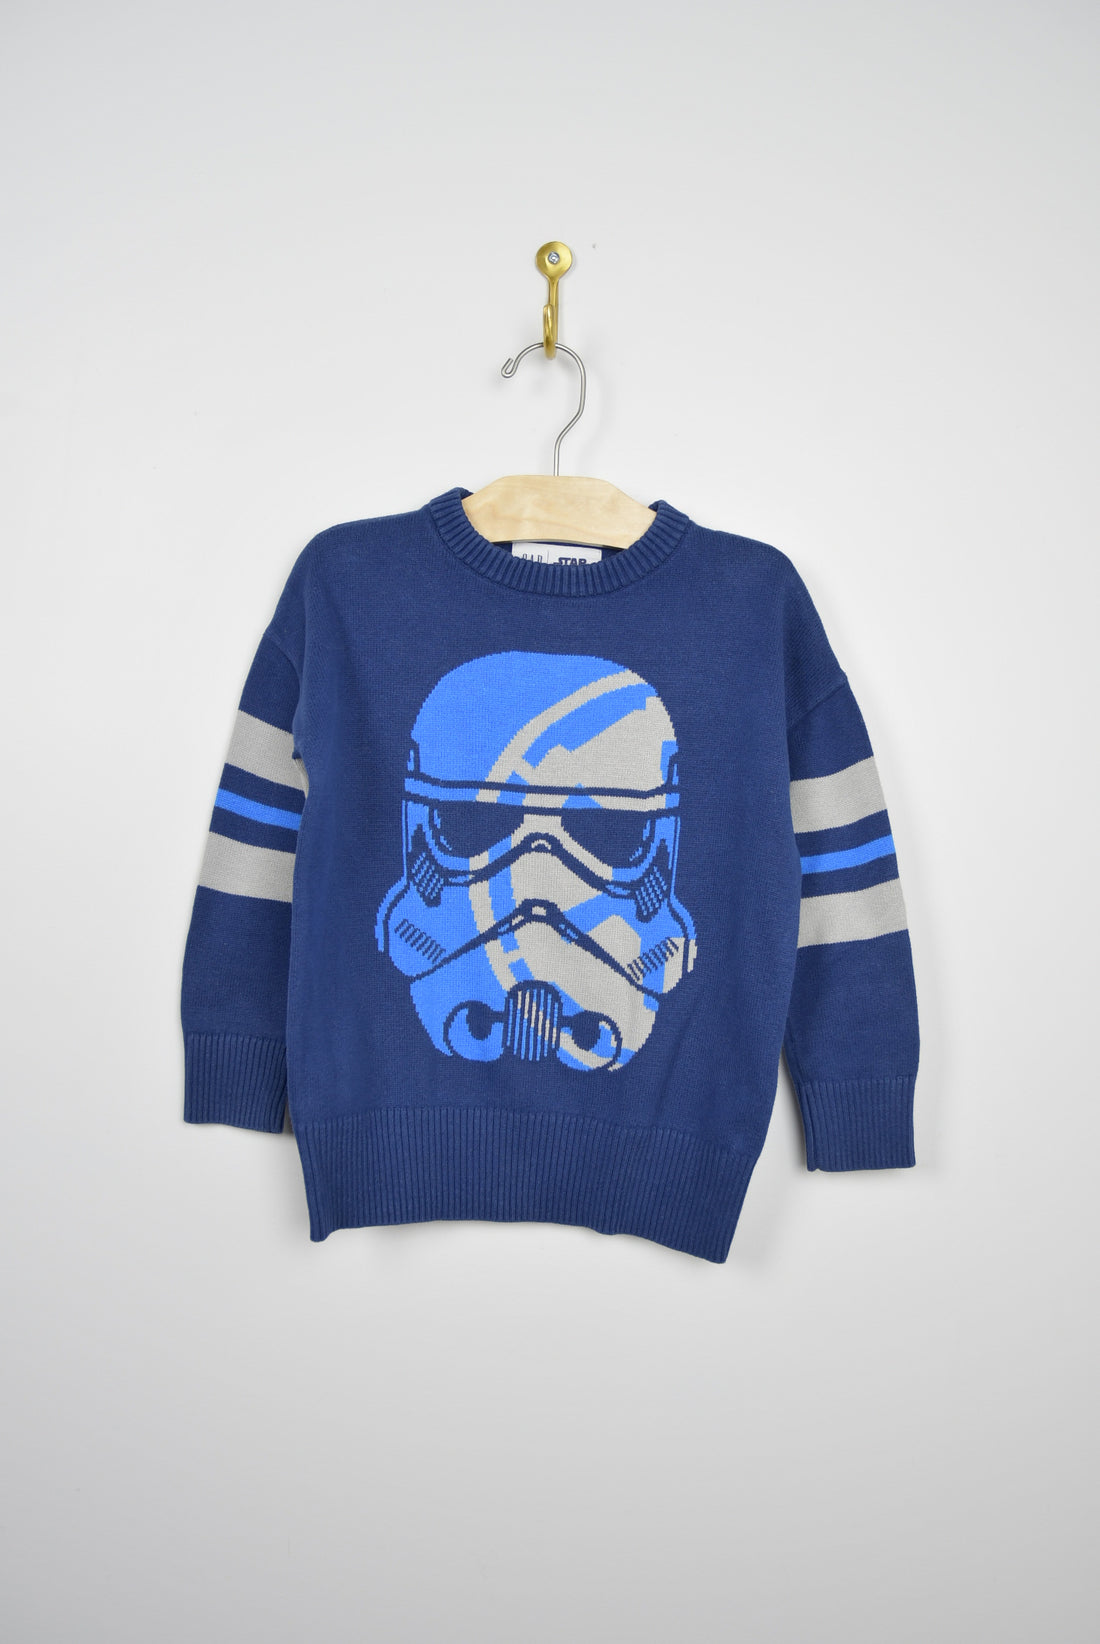 Gap Gap Star Wars Sweater - 4-5T